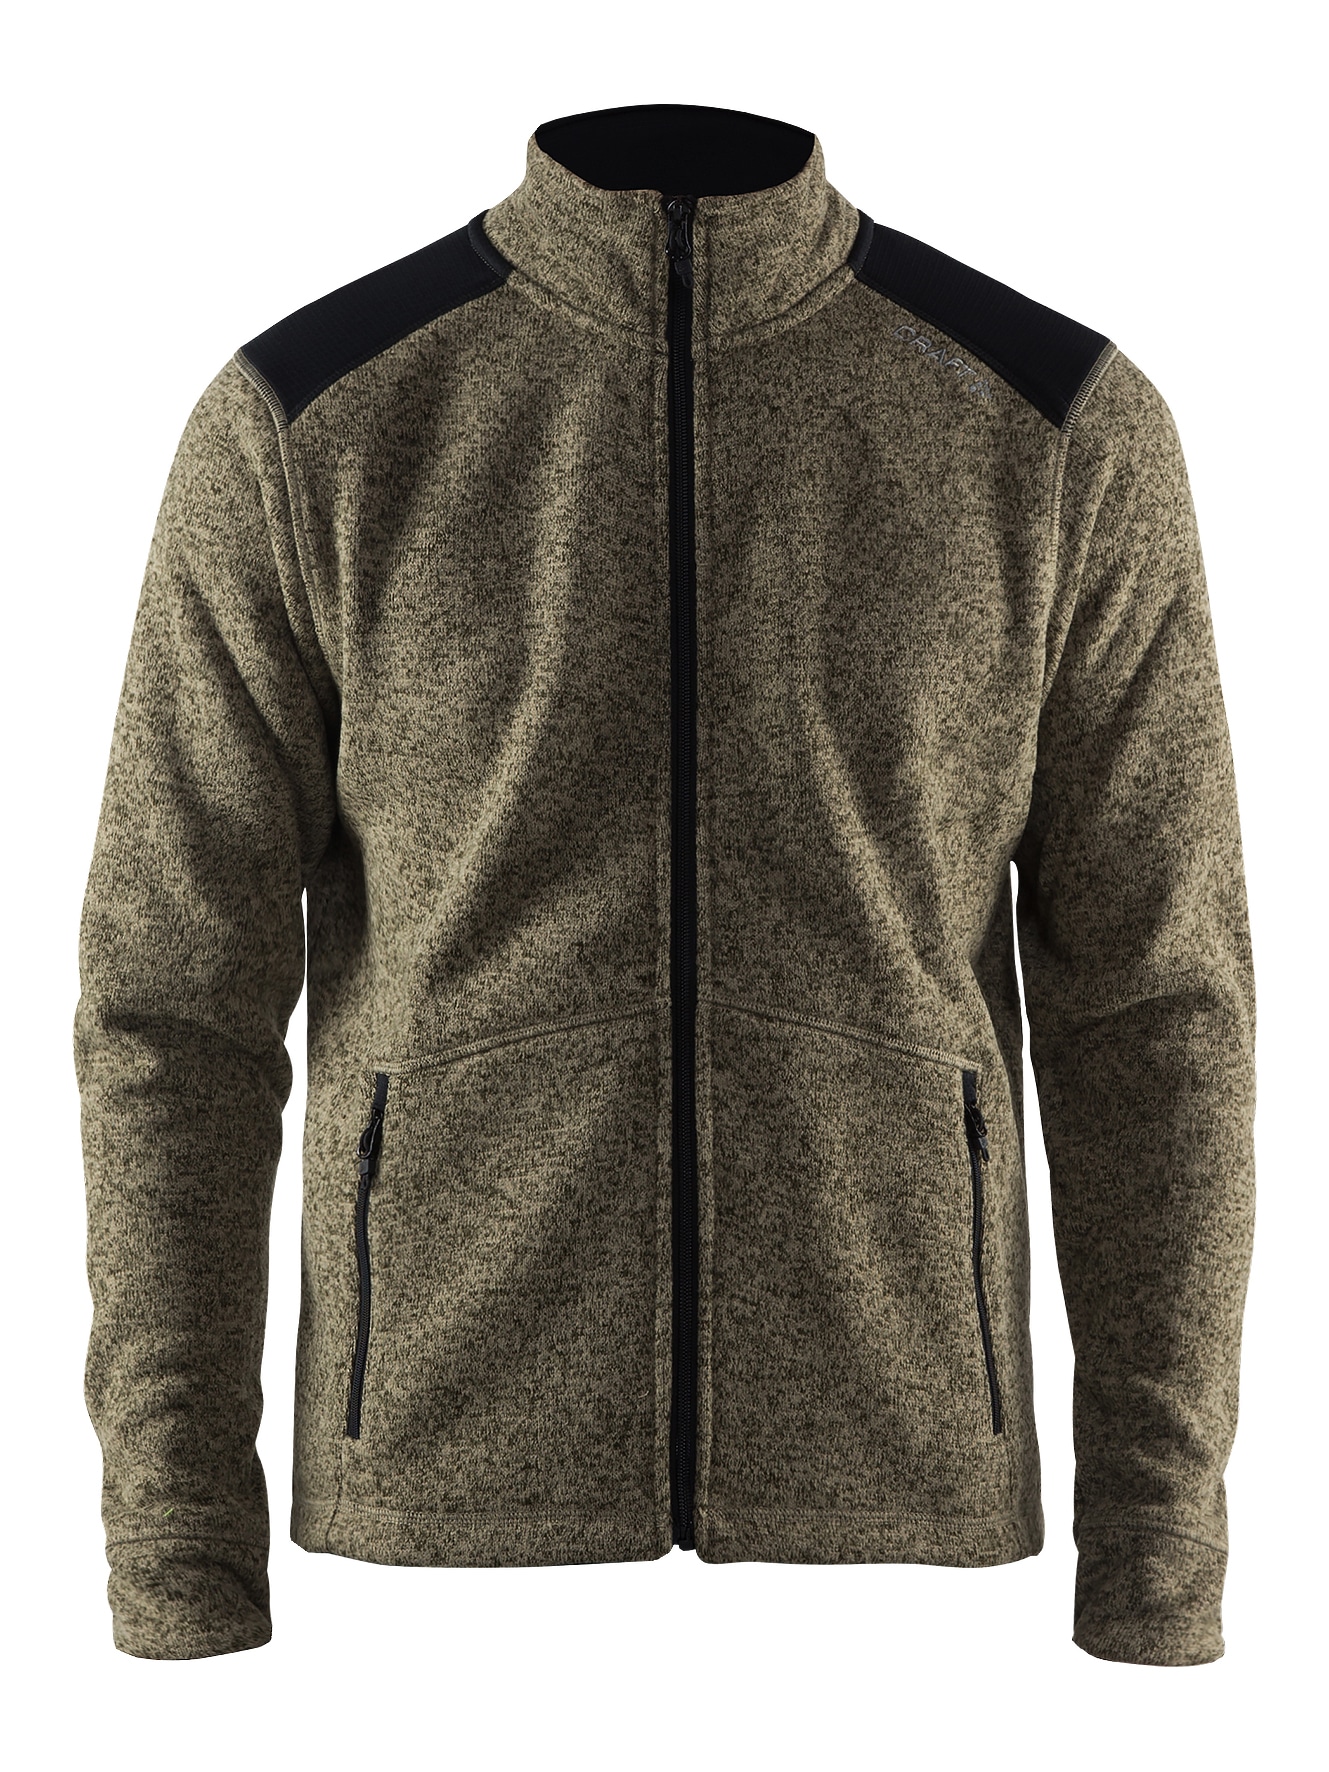 Craft - Noble Zip Jacket Heavy Knit fleece Maend - Dk Forrest/Black S